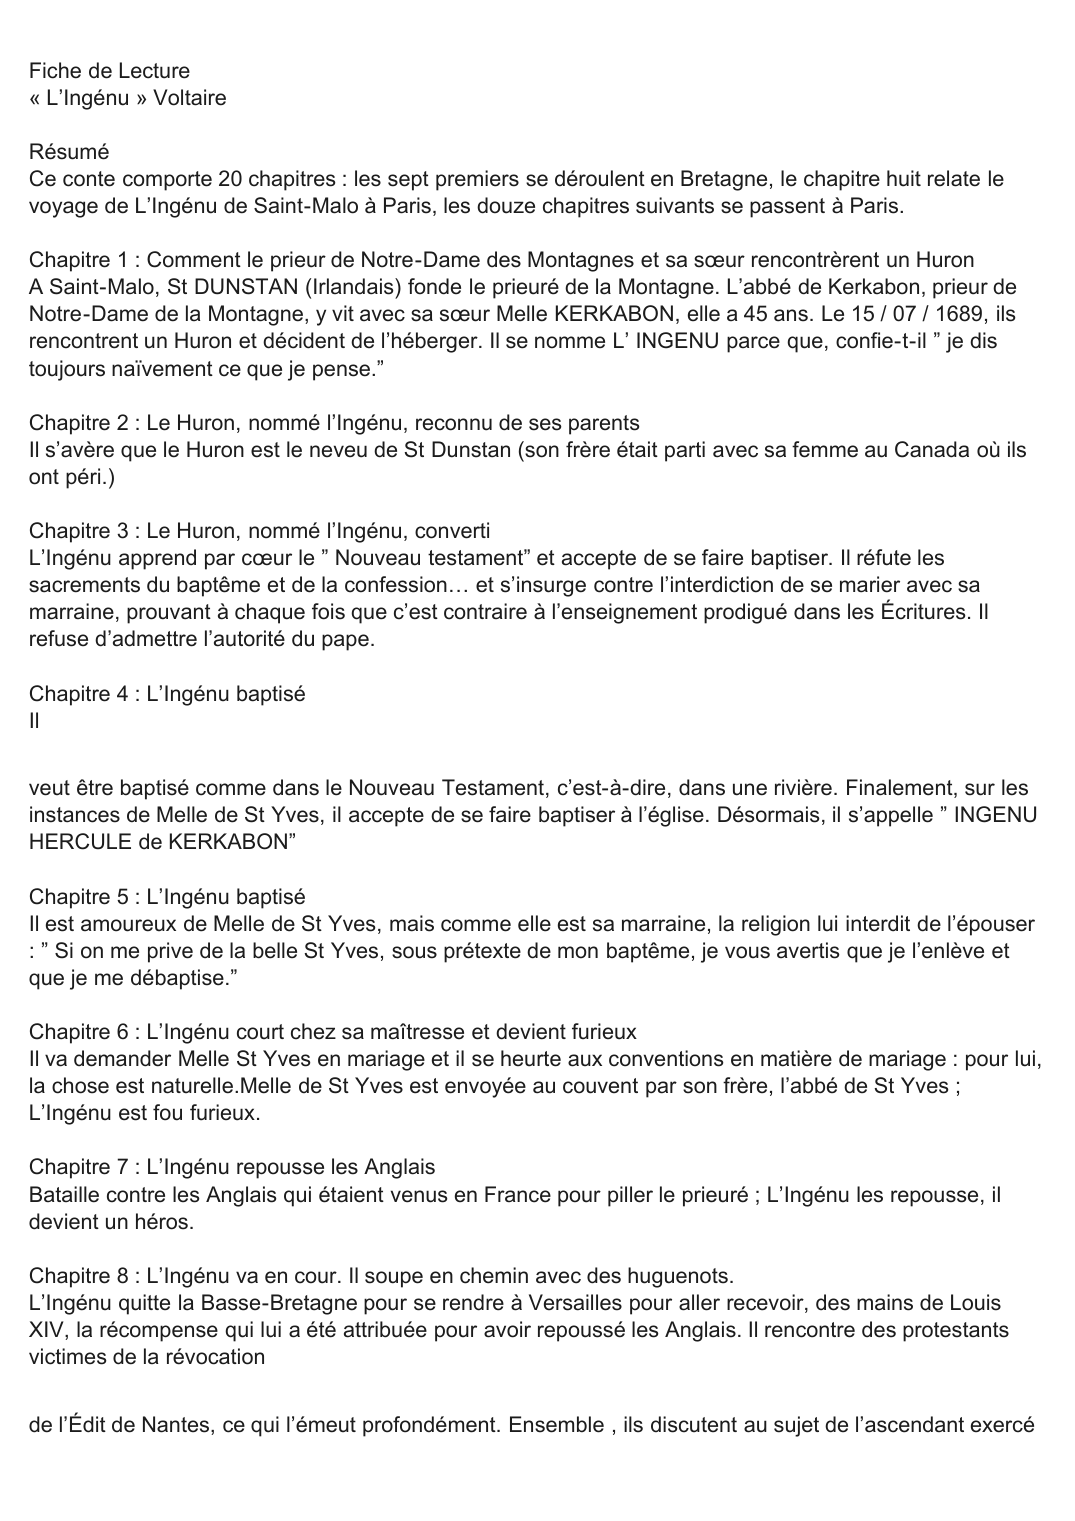 Prévisualisation du document Fiche de Lecture « L'Ingénu » de Voltaire